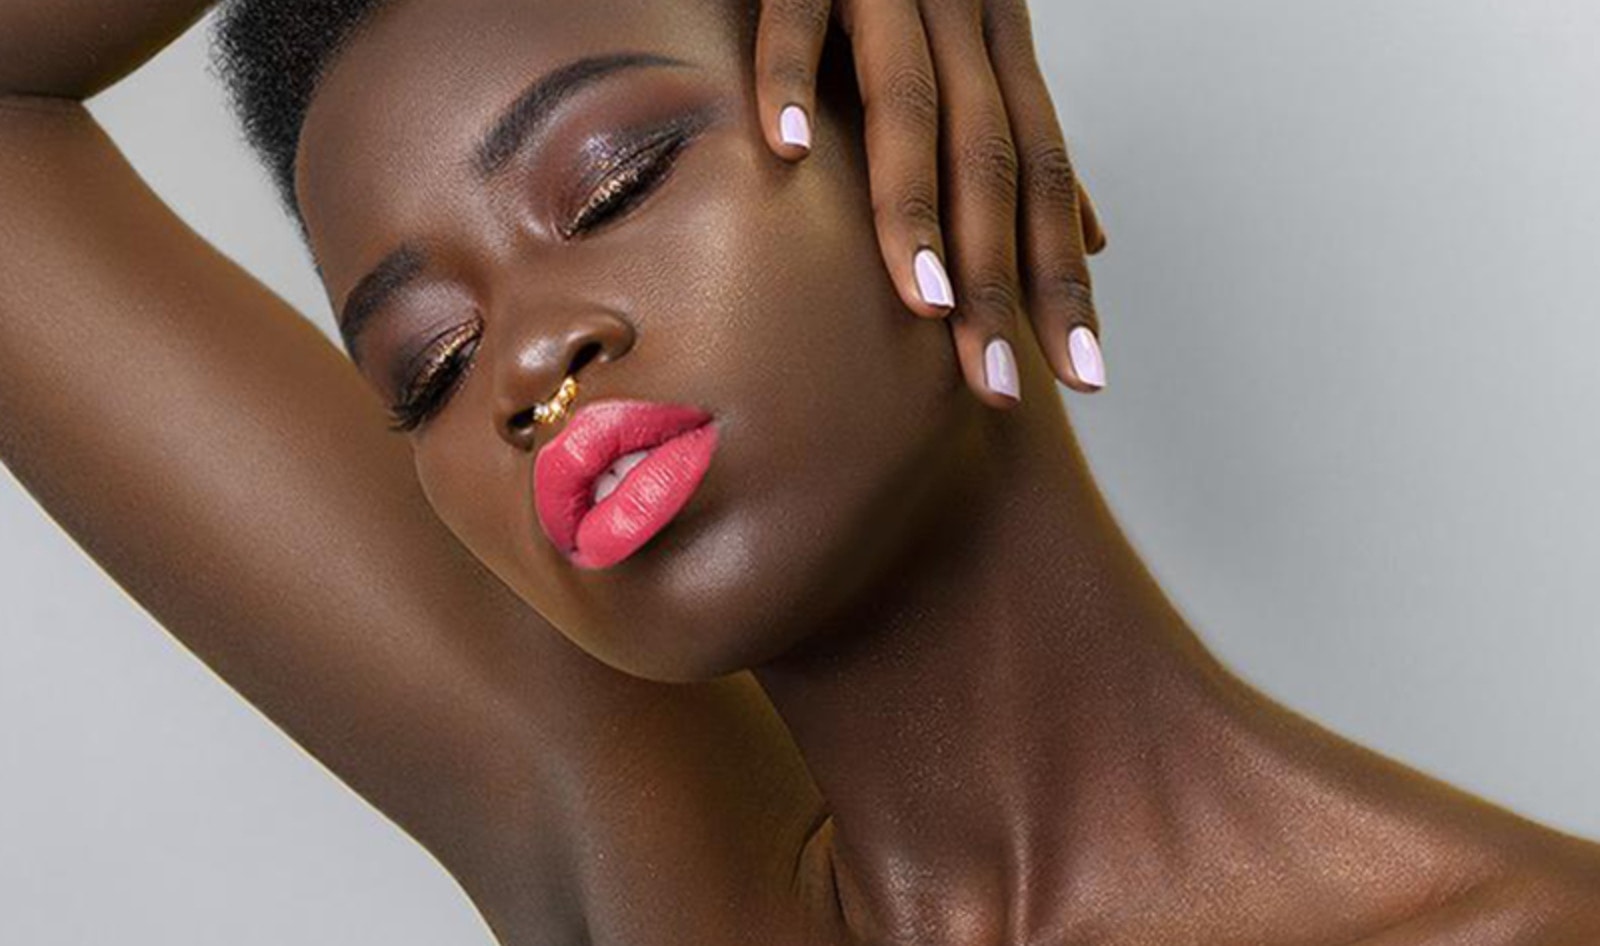 Vegan Lipstick Brand to Open Makeup Shop in Detroit